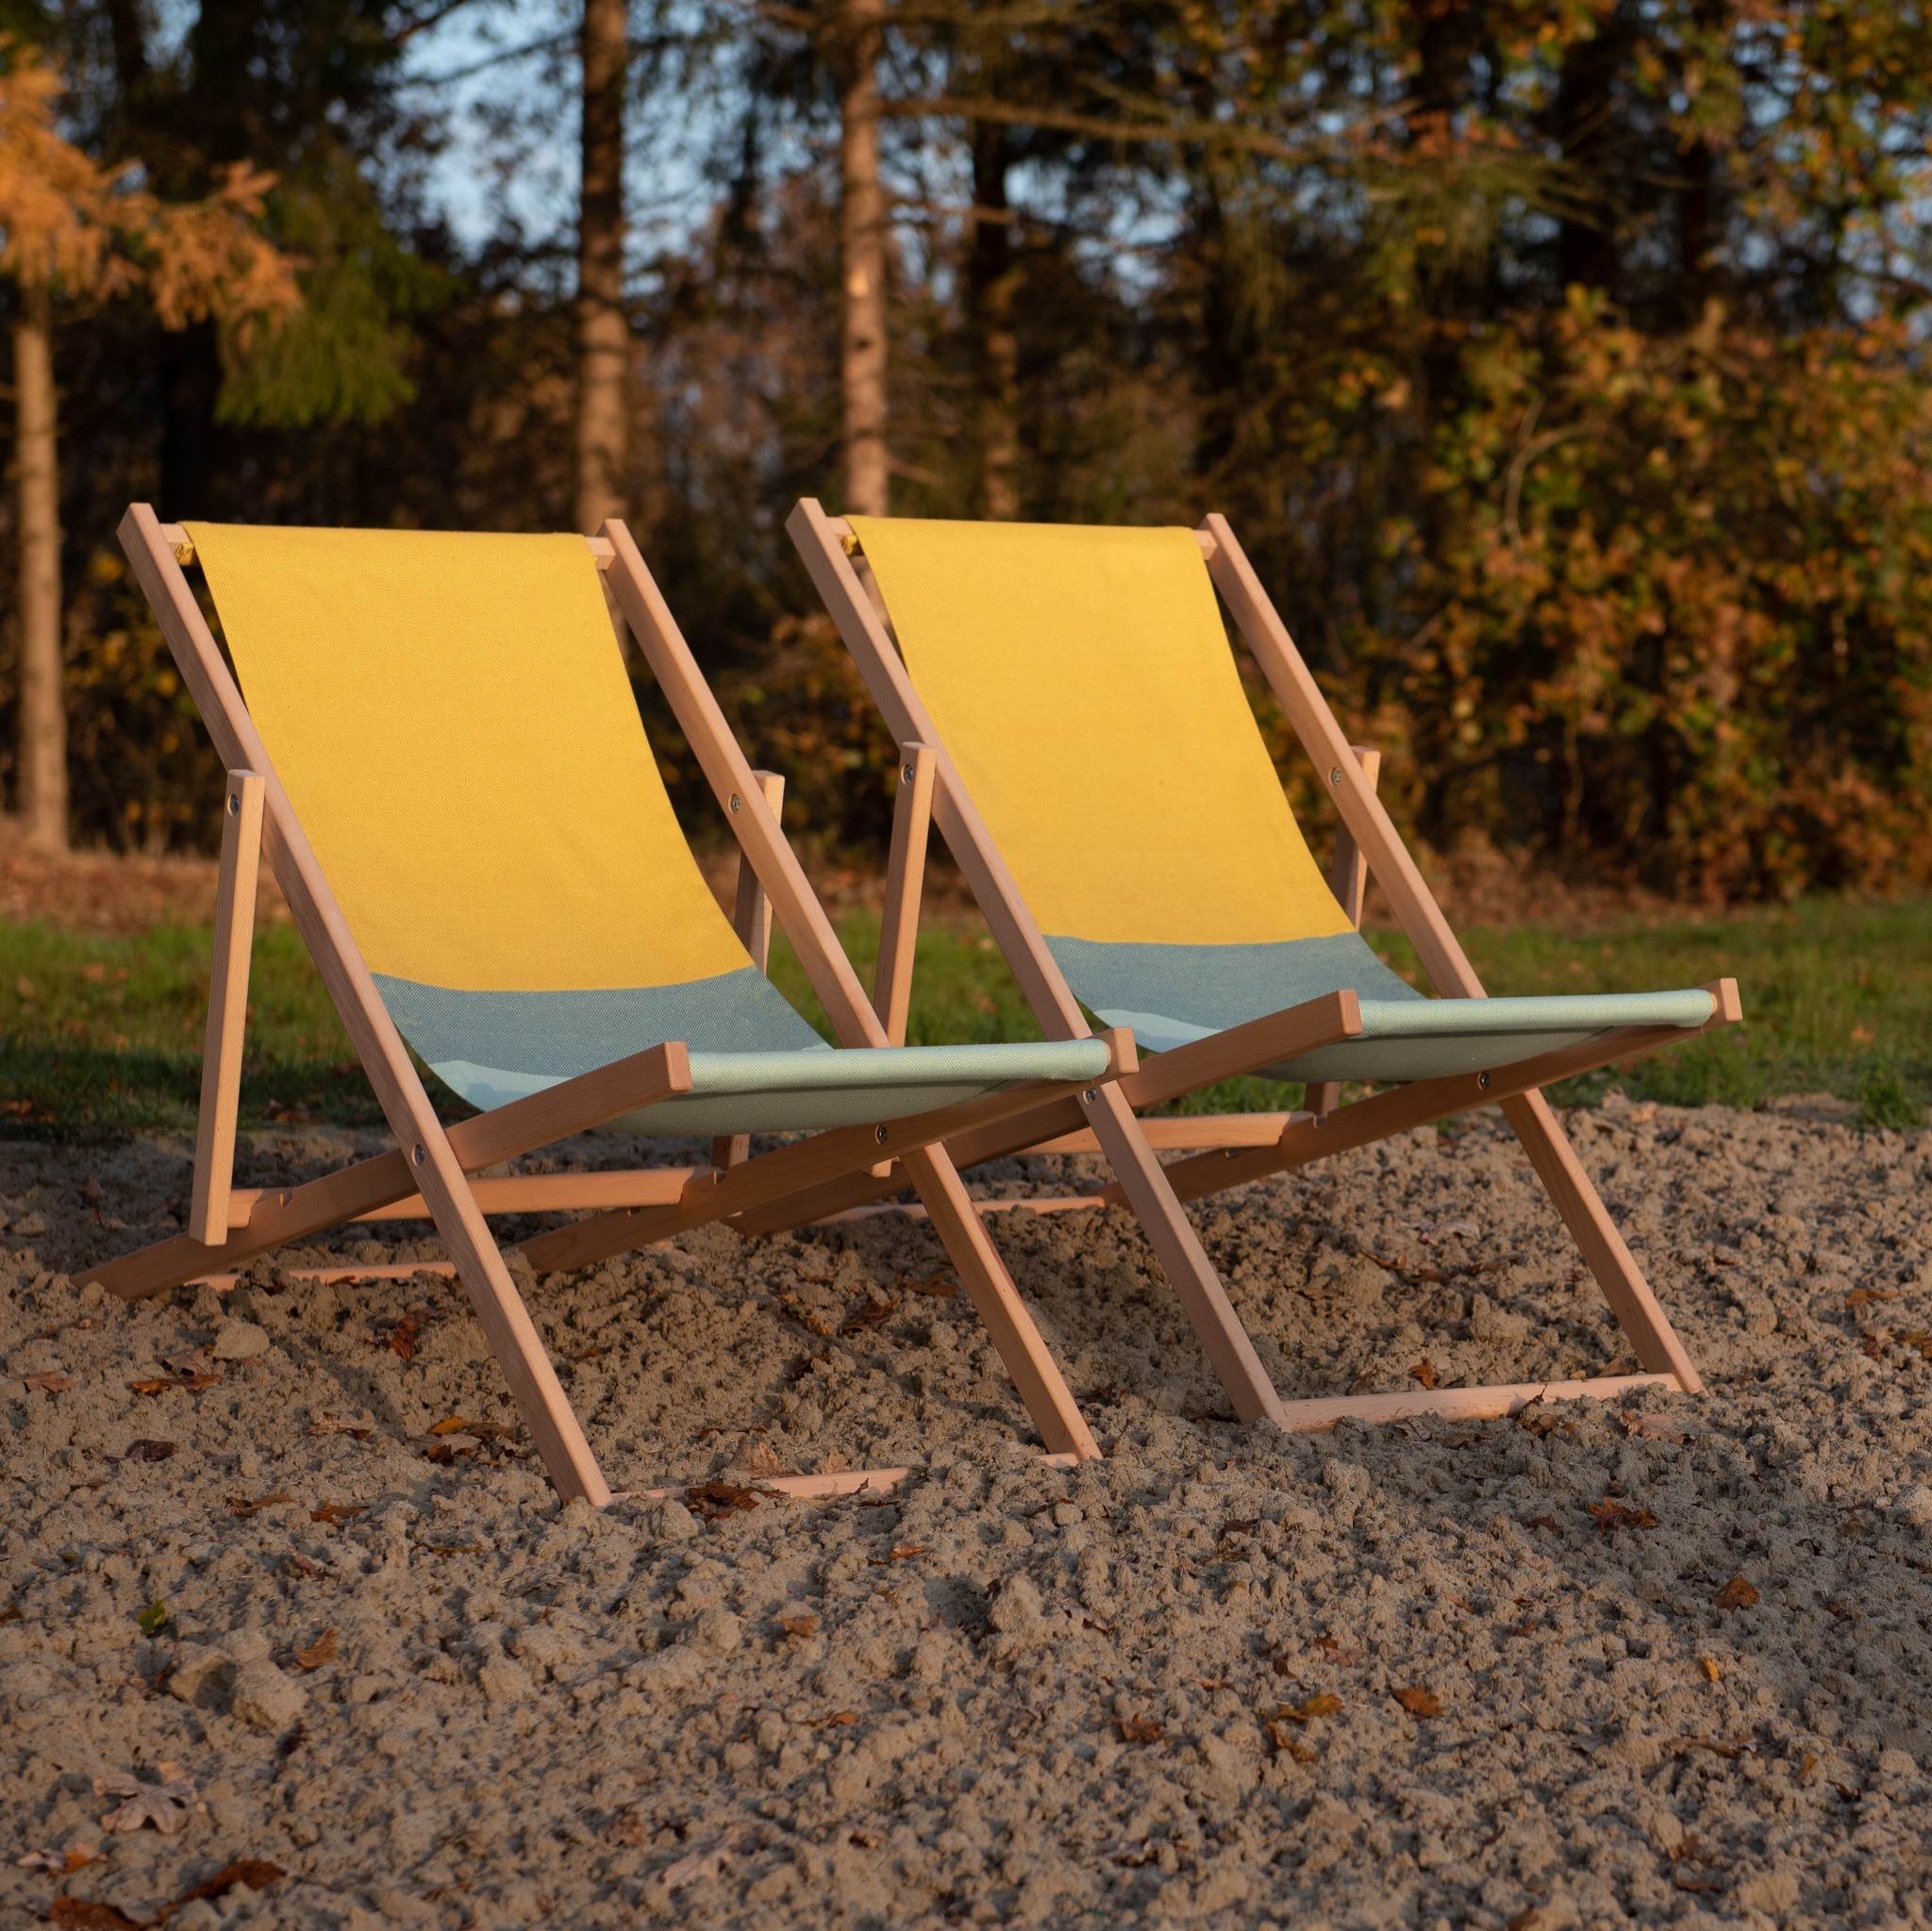 virtueel Anders Bedienen Beach Chair - Strandstoel |Weltevree official dealer bij Heldere Hemel -  Bij Heldere Hemel